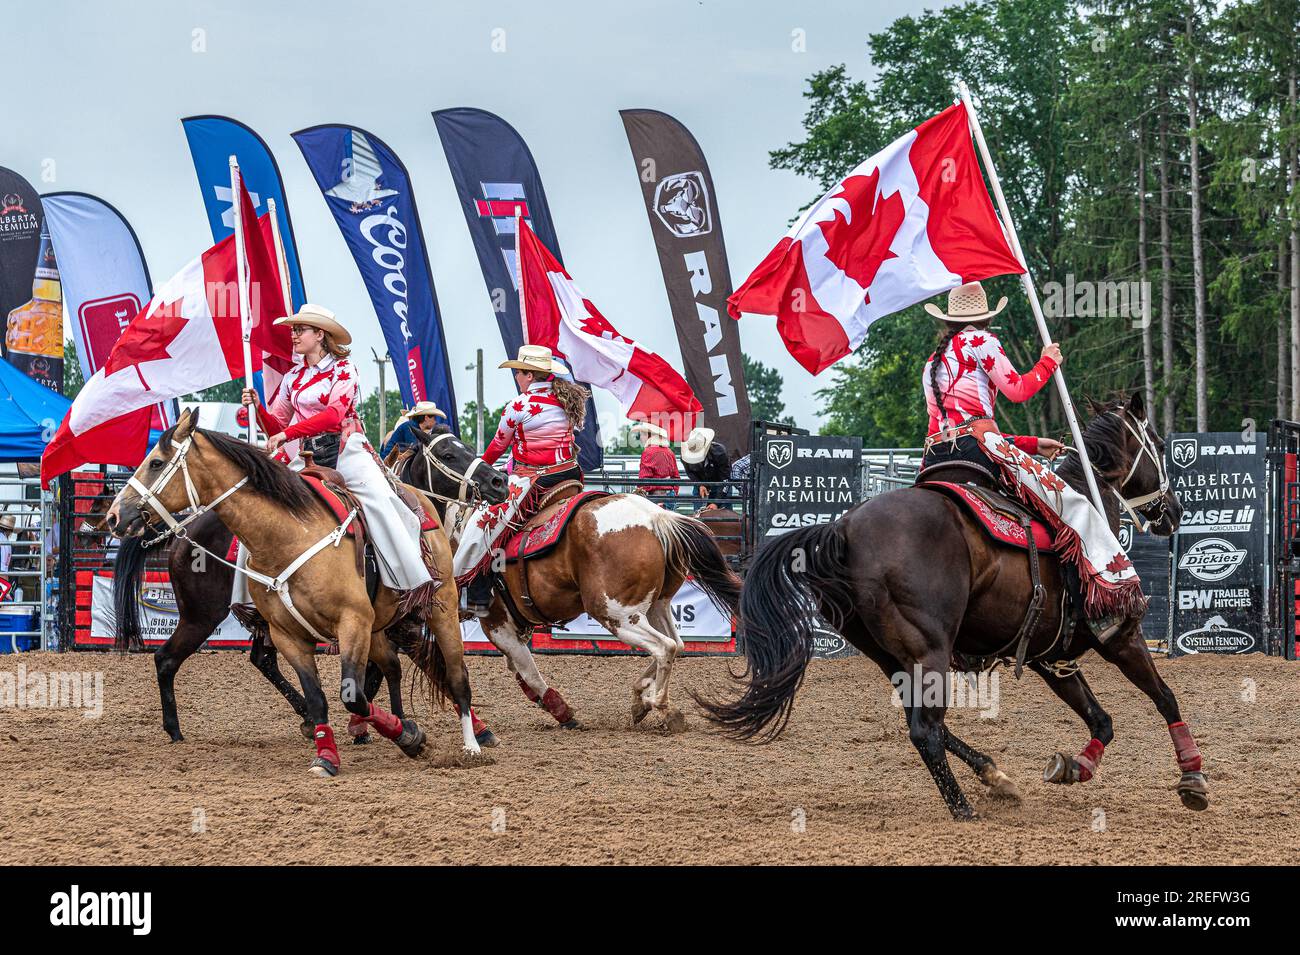 Canada Rodeo. ERIN ONTARIO RAM RODEO - il 22-23 luglio a Erin, Ontario, ha avuto luogo una competizione tipo rodeo. Cavalcare cavalli e tori. Slalom dei cavalli. Foto Stock